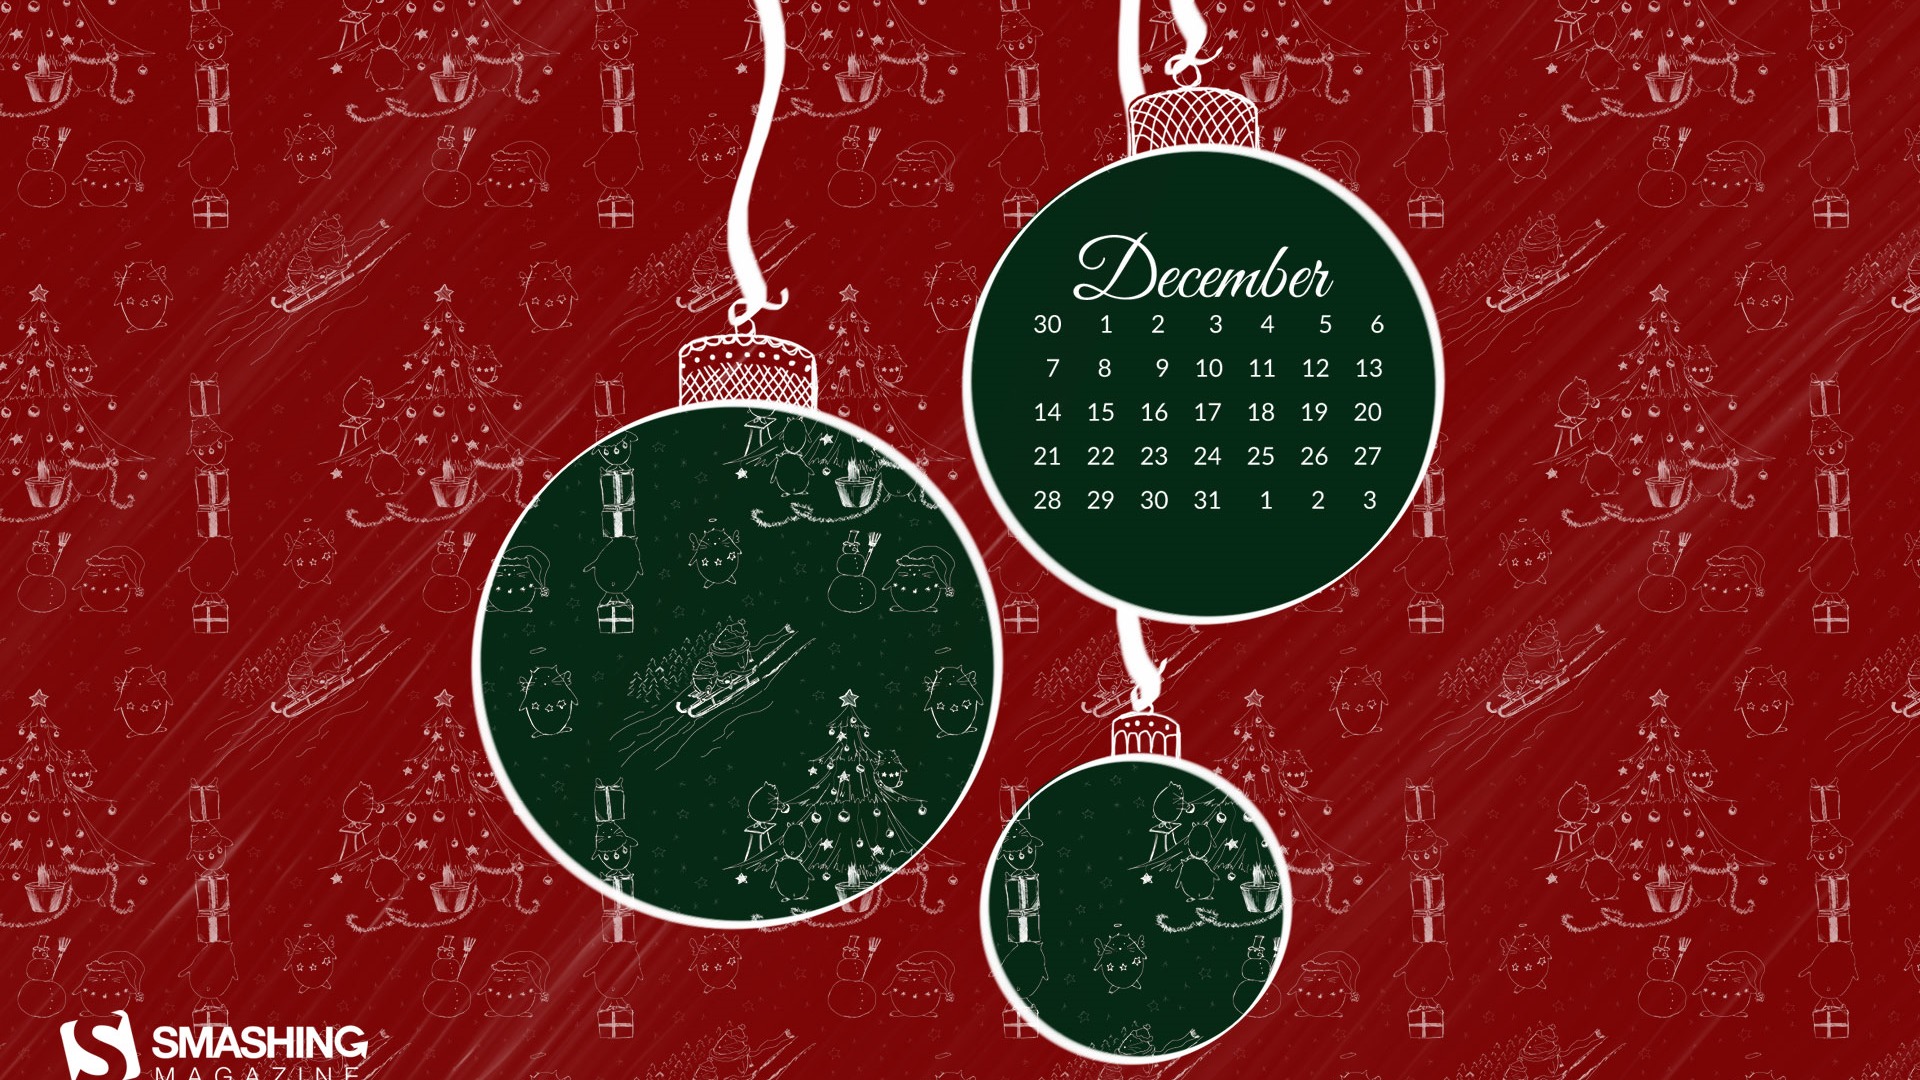 December 2015 Calendar wallpaper (2) #10 - 1920x1080